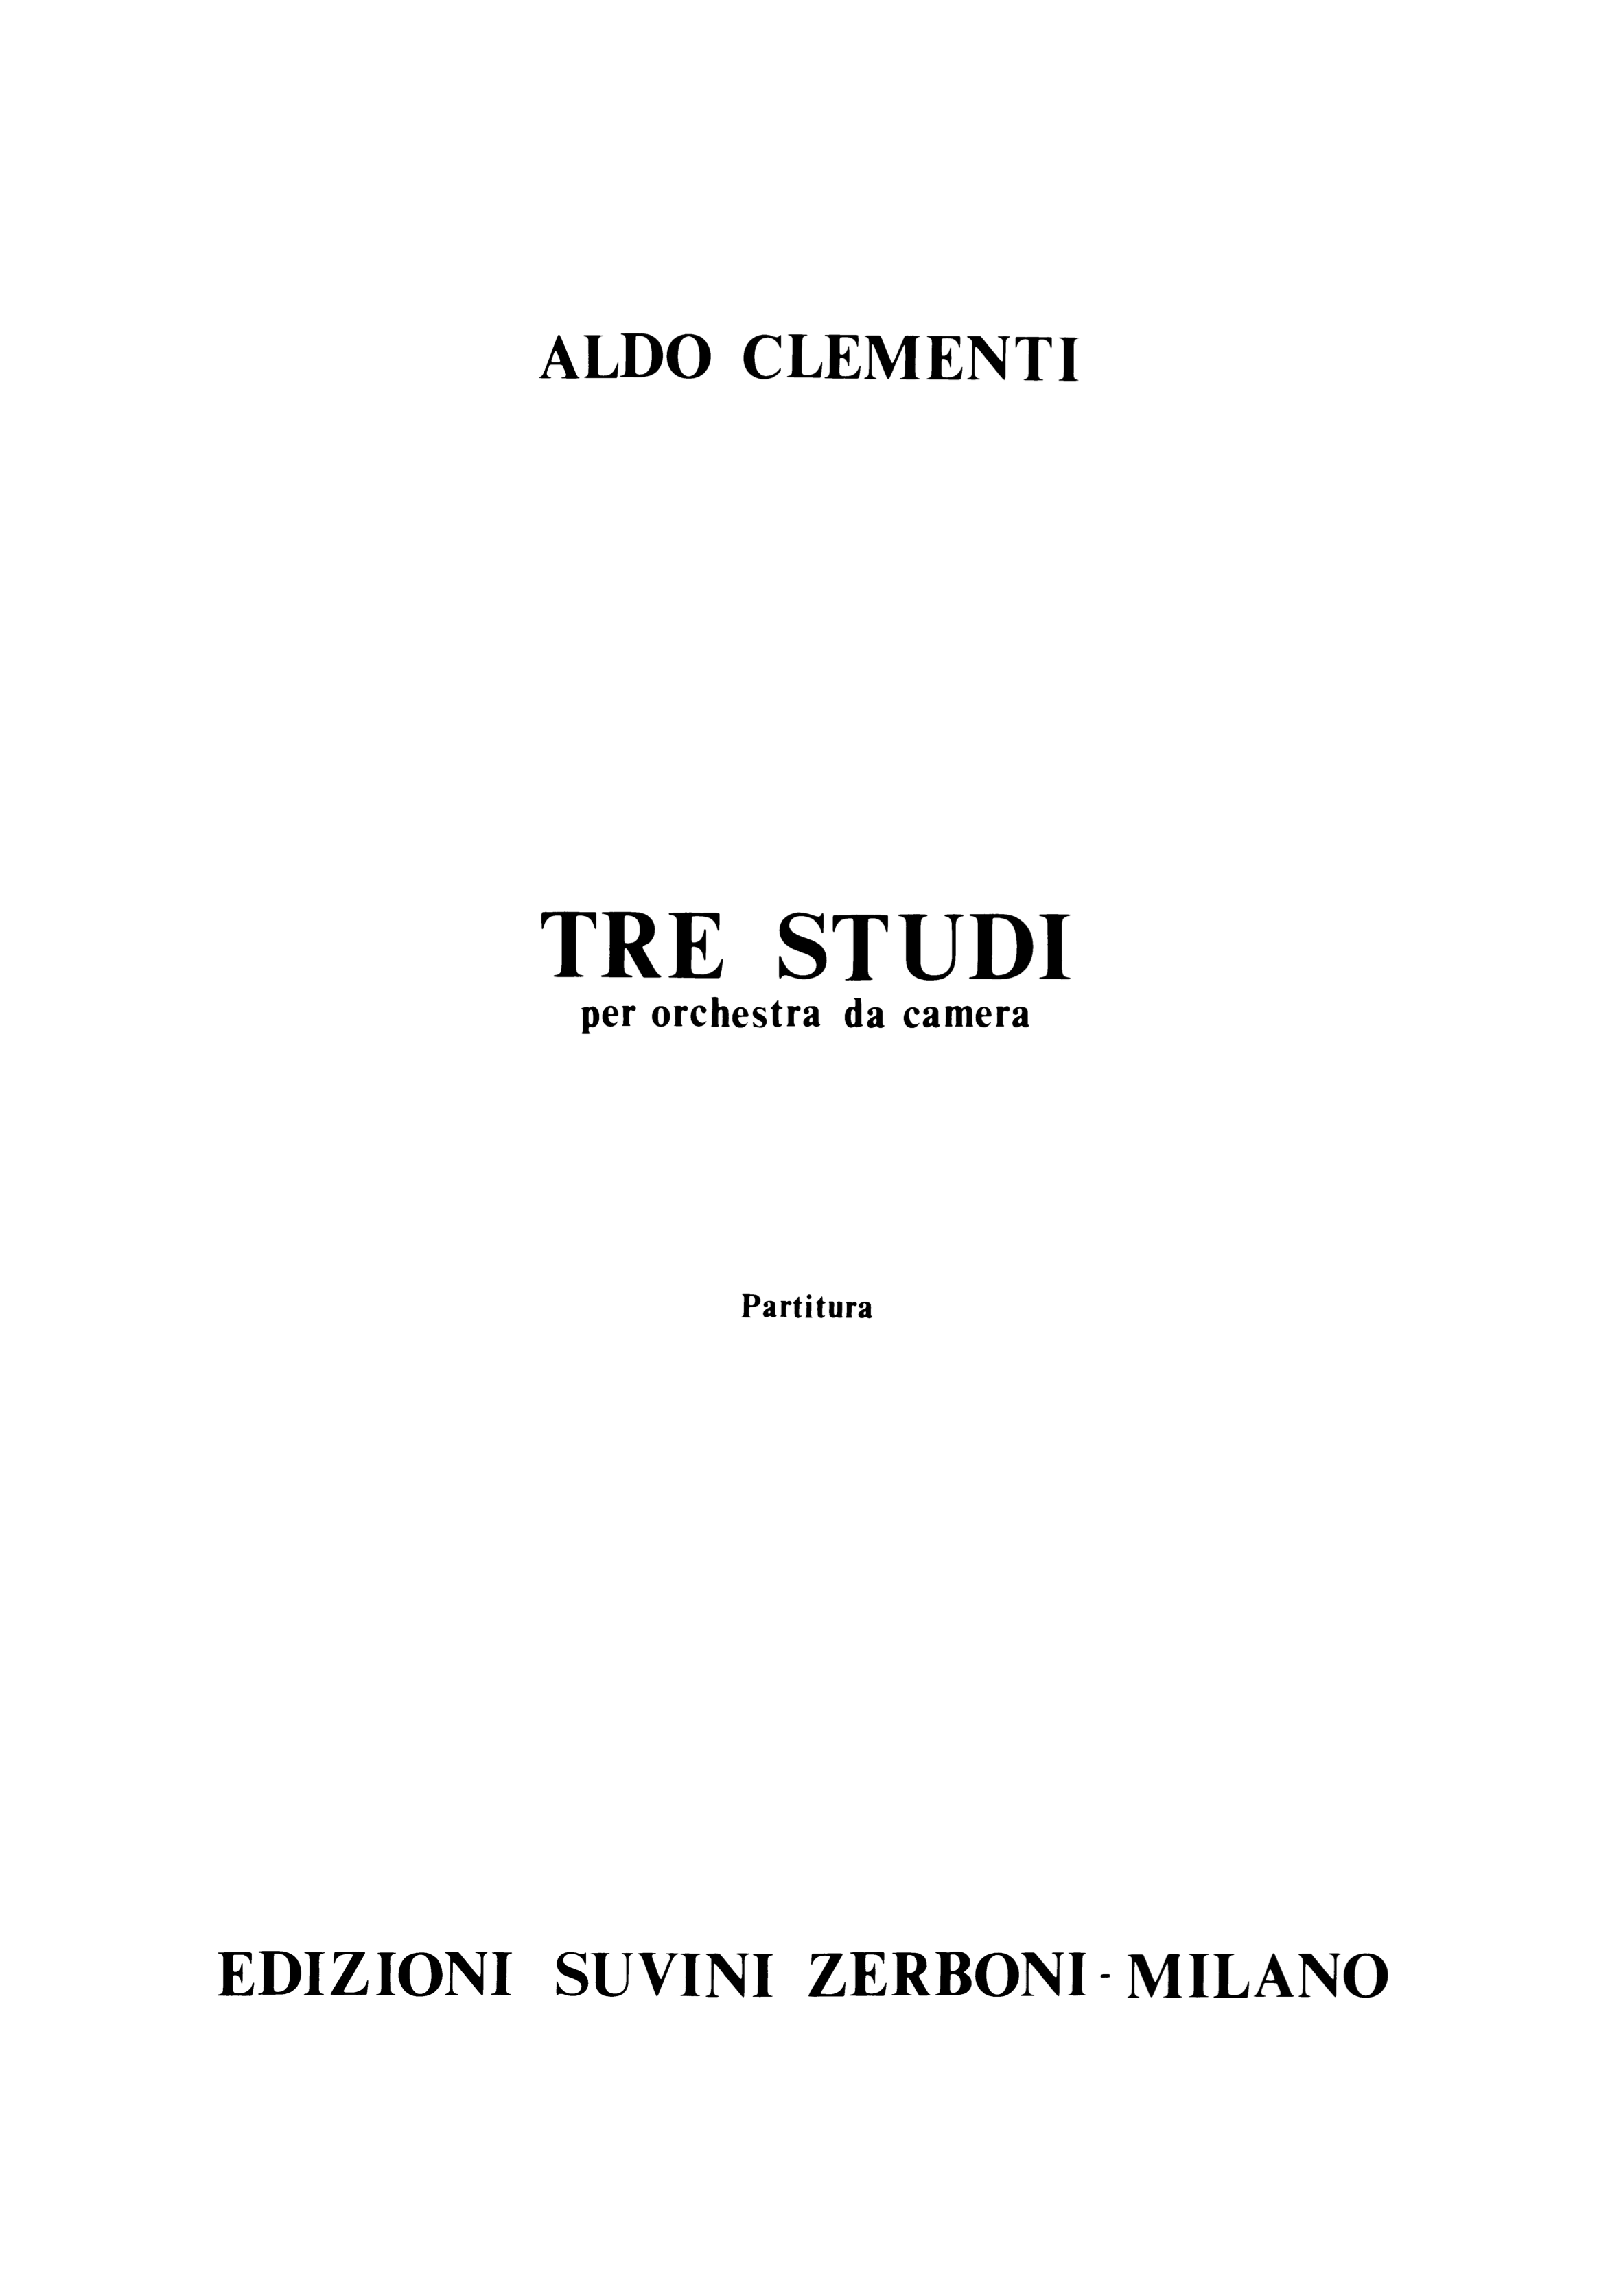 Tre studi_Clementi Aldo 1